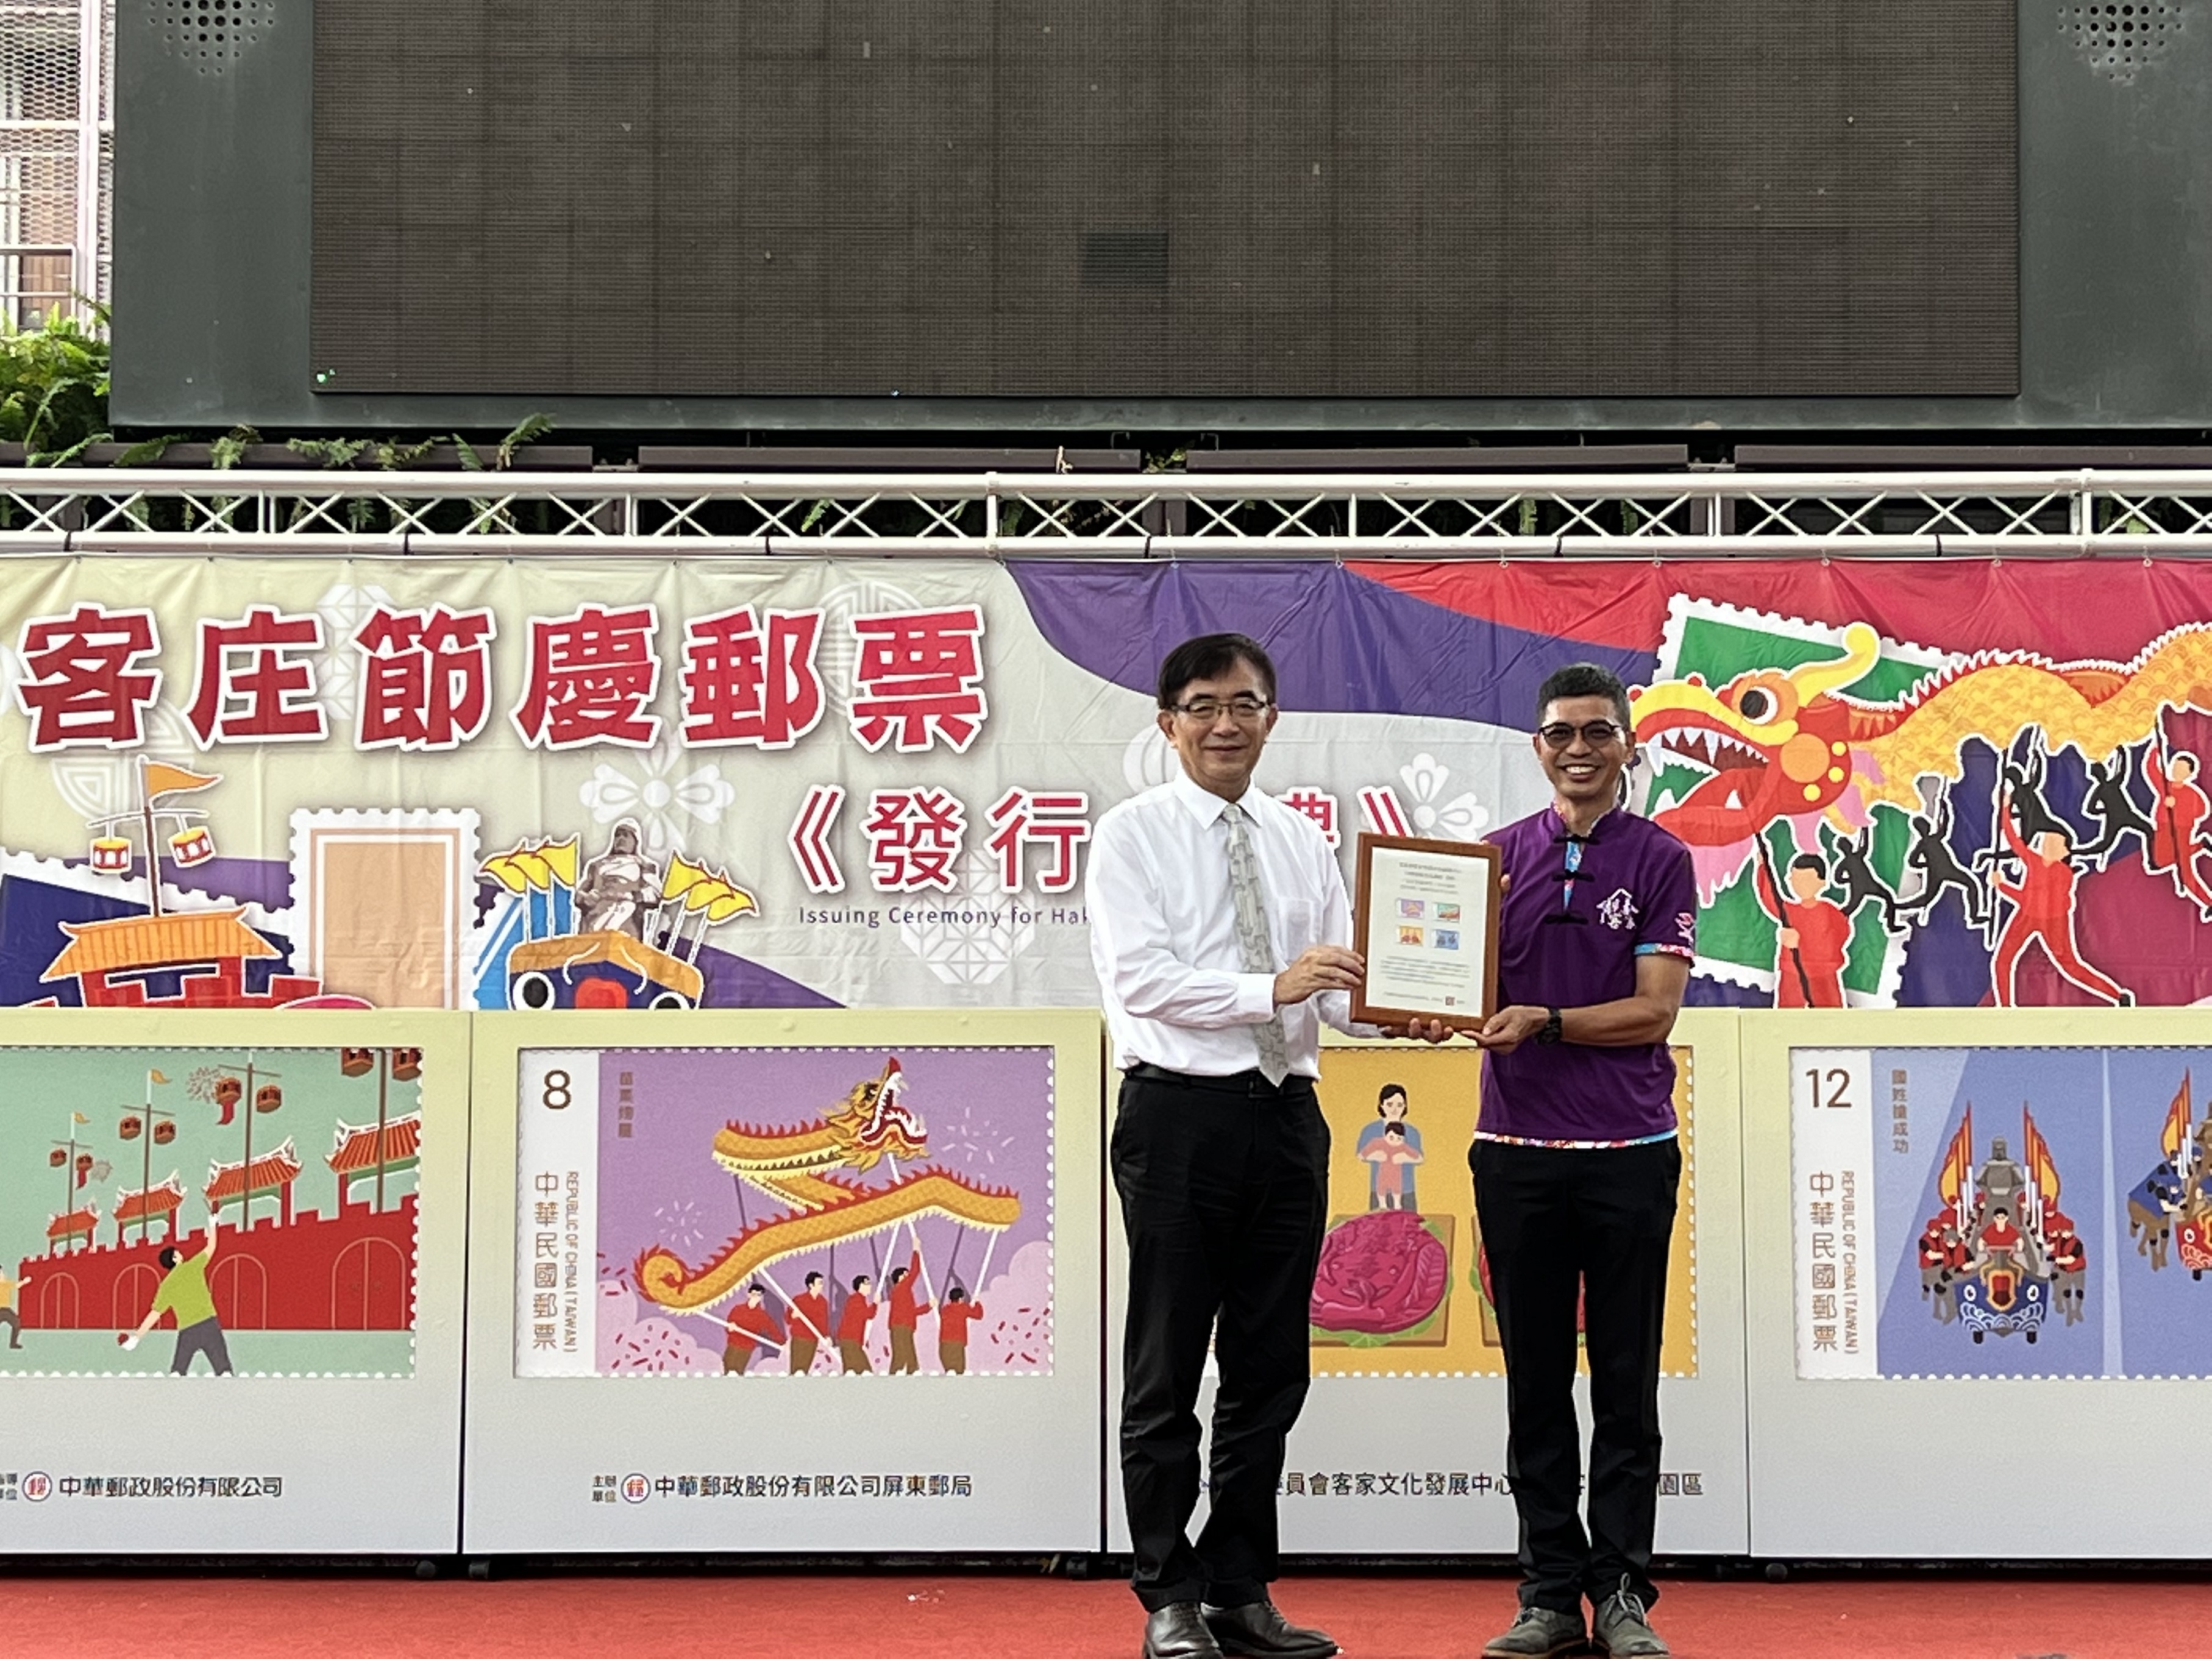 中華郵政公司吳宏謀董事長致贈郵票紀念框予客家委員會客家文化發展中心何金樑主任。